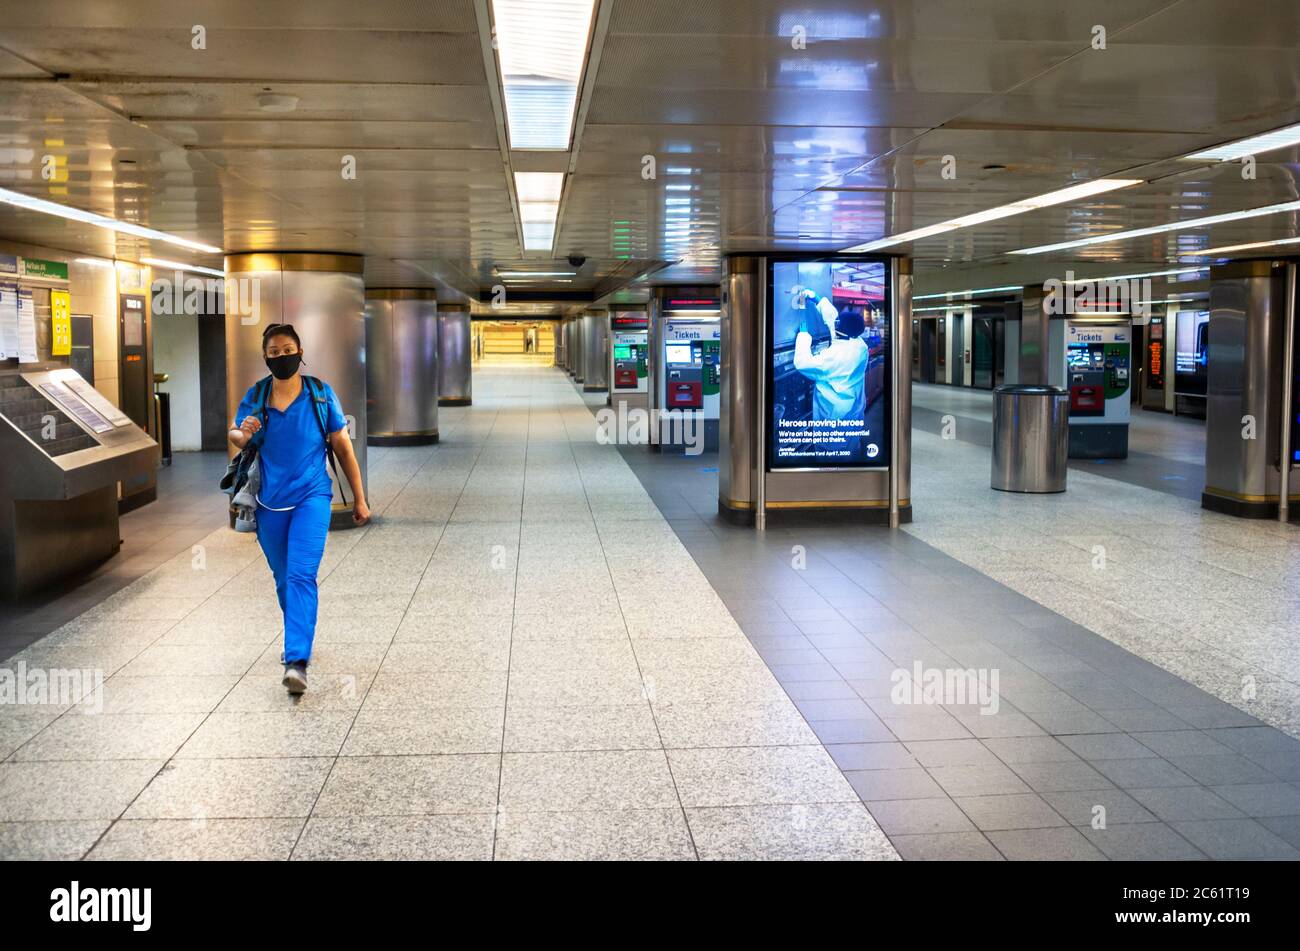 Une femme seule, qui est normalement l'heure de pointe, dans la station de Pennsylvanie, sur le chemin de travailler pendant le programme de verrouillage de la pandémie Covid-19 à New York. Banque D'Images